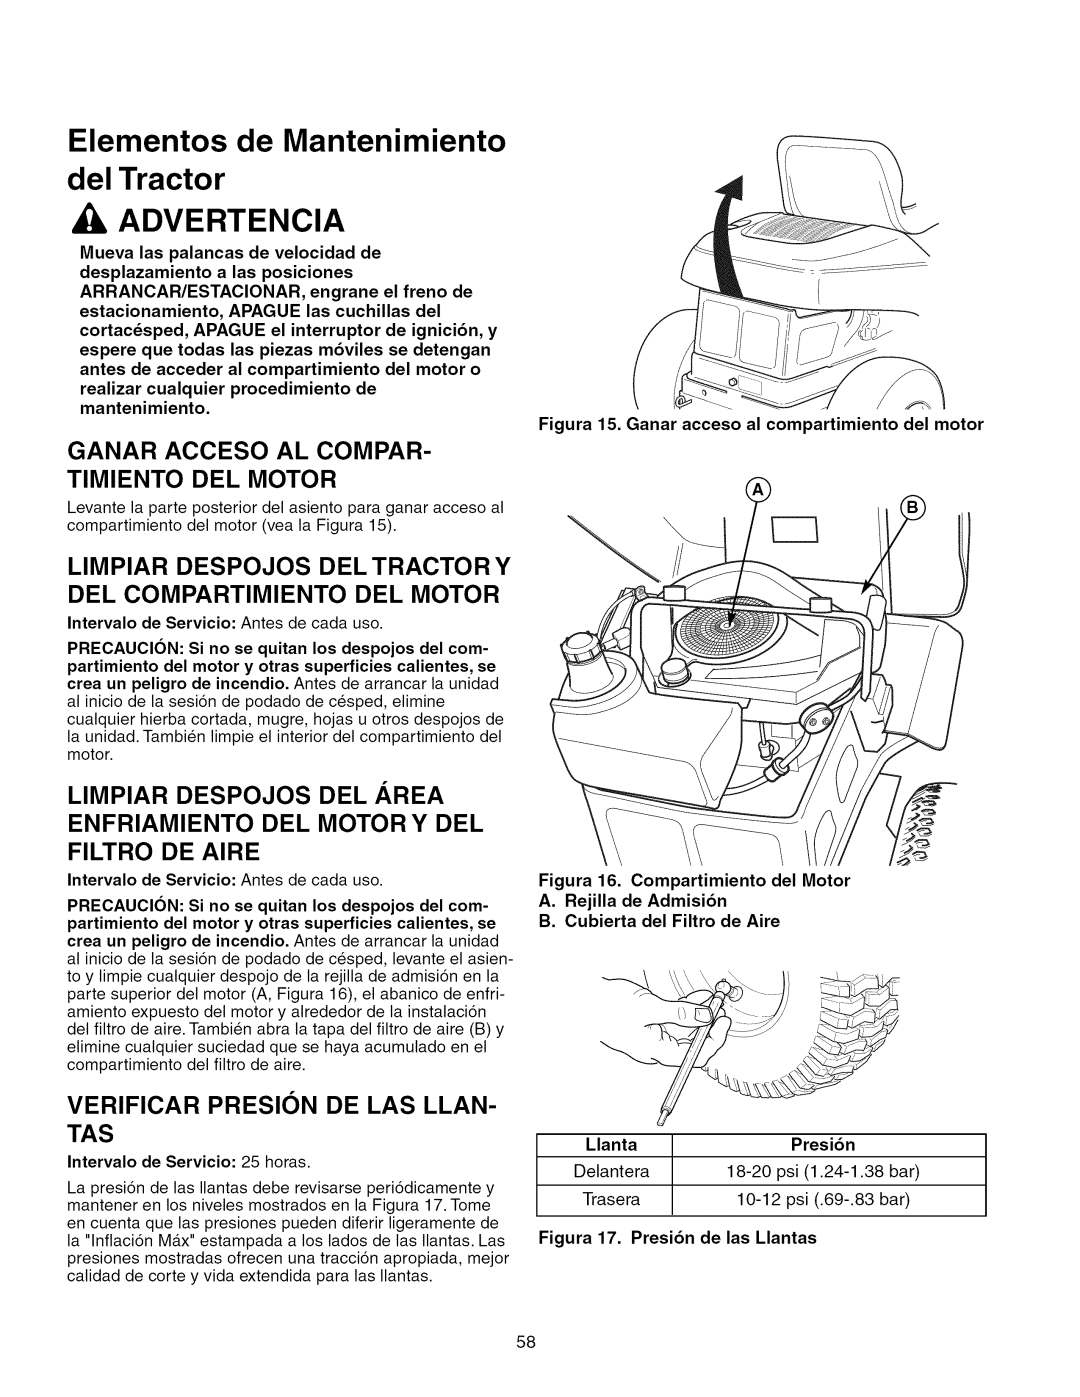 Craftsman 107.289860 manual Elementos de Mantenimiento del Tractor, Aadvertencia, Limpiar Despojos Del Area, Filtro De Aire 